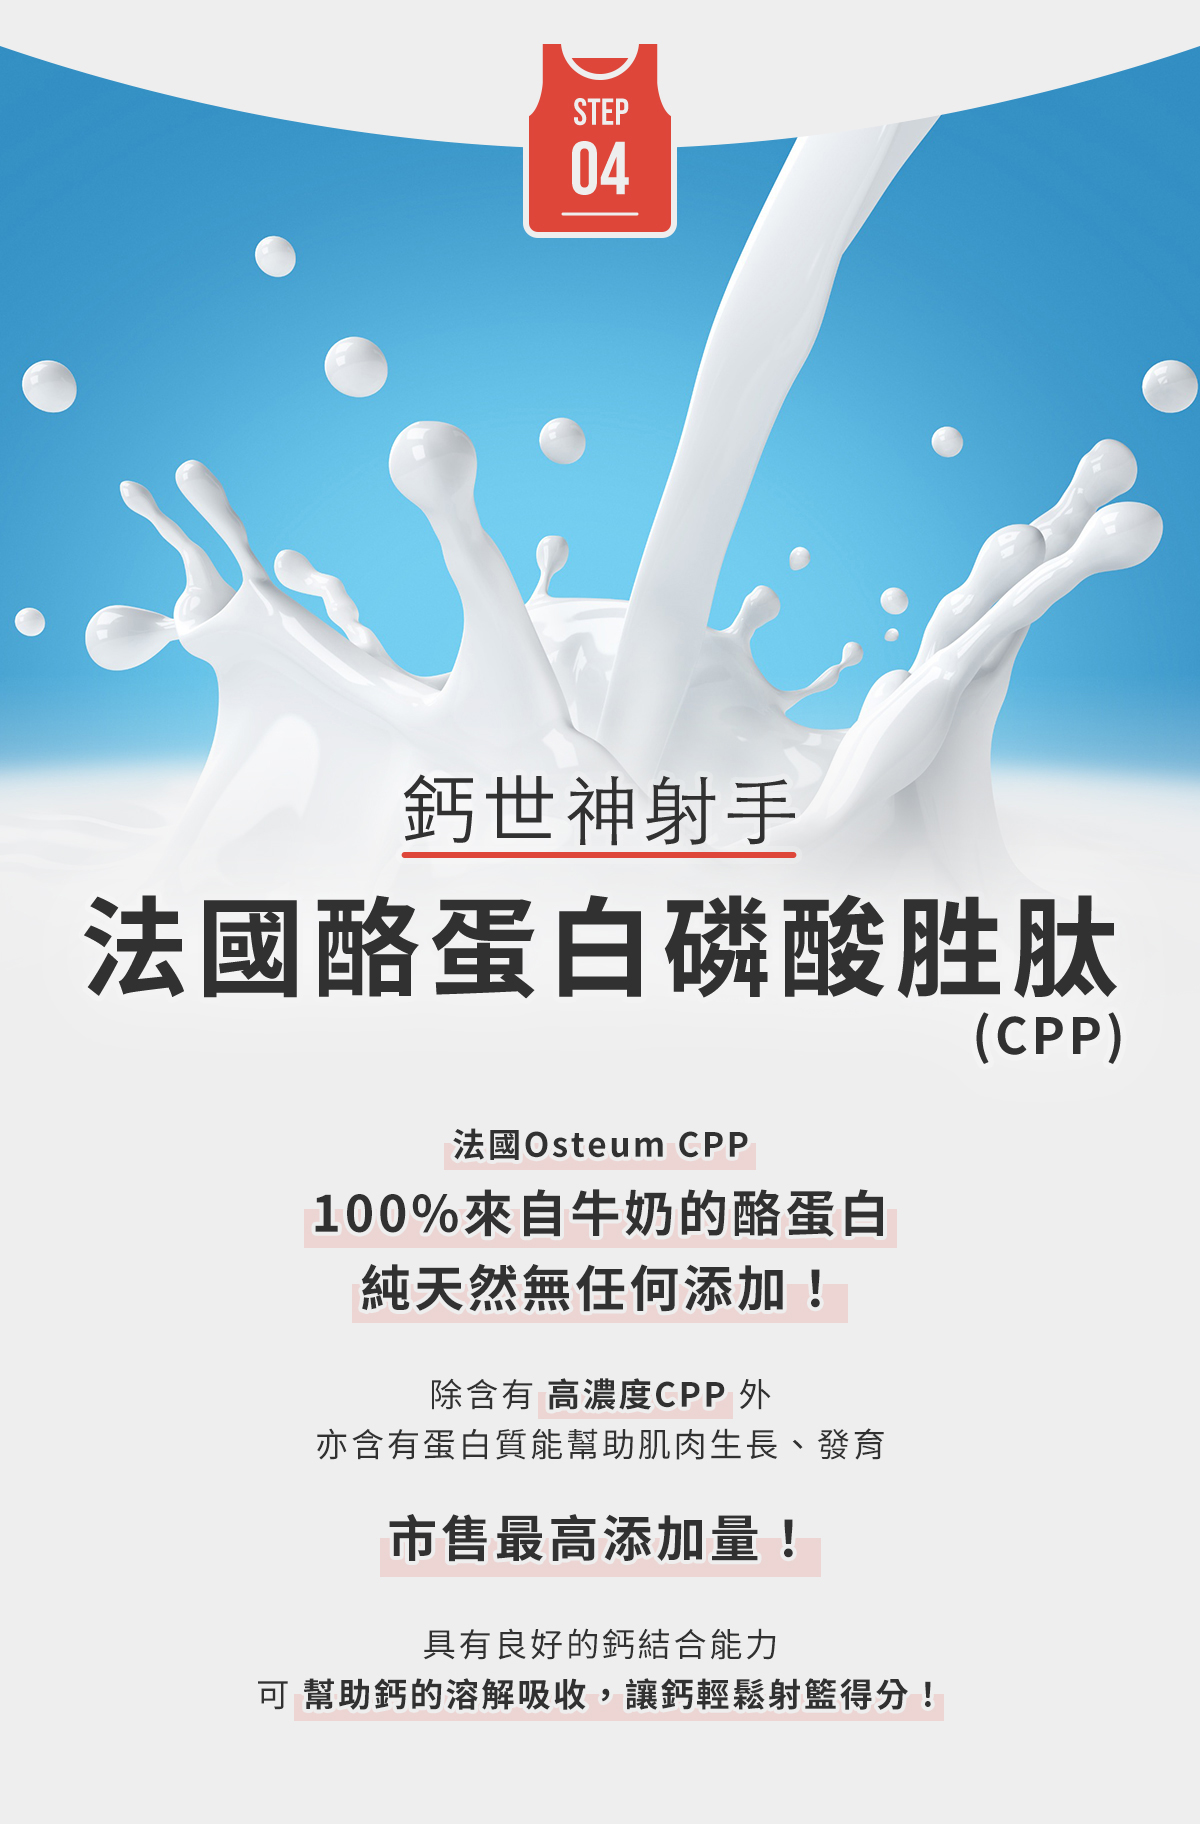 STEP4-鈣世神射手，法國酪蛋白磷酸胜肽(CPP)：法國Osteum CPP，100%來自牛奶的酪蛋白，純天然無任何添加！市售最高添加量！幫助鈣的溶解吸收，讓鈣輕鬆射籃得分！